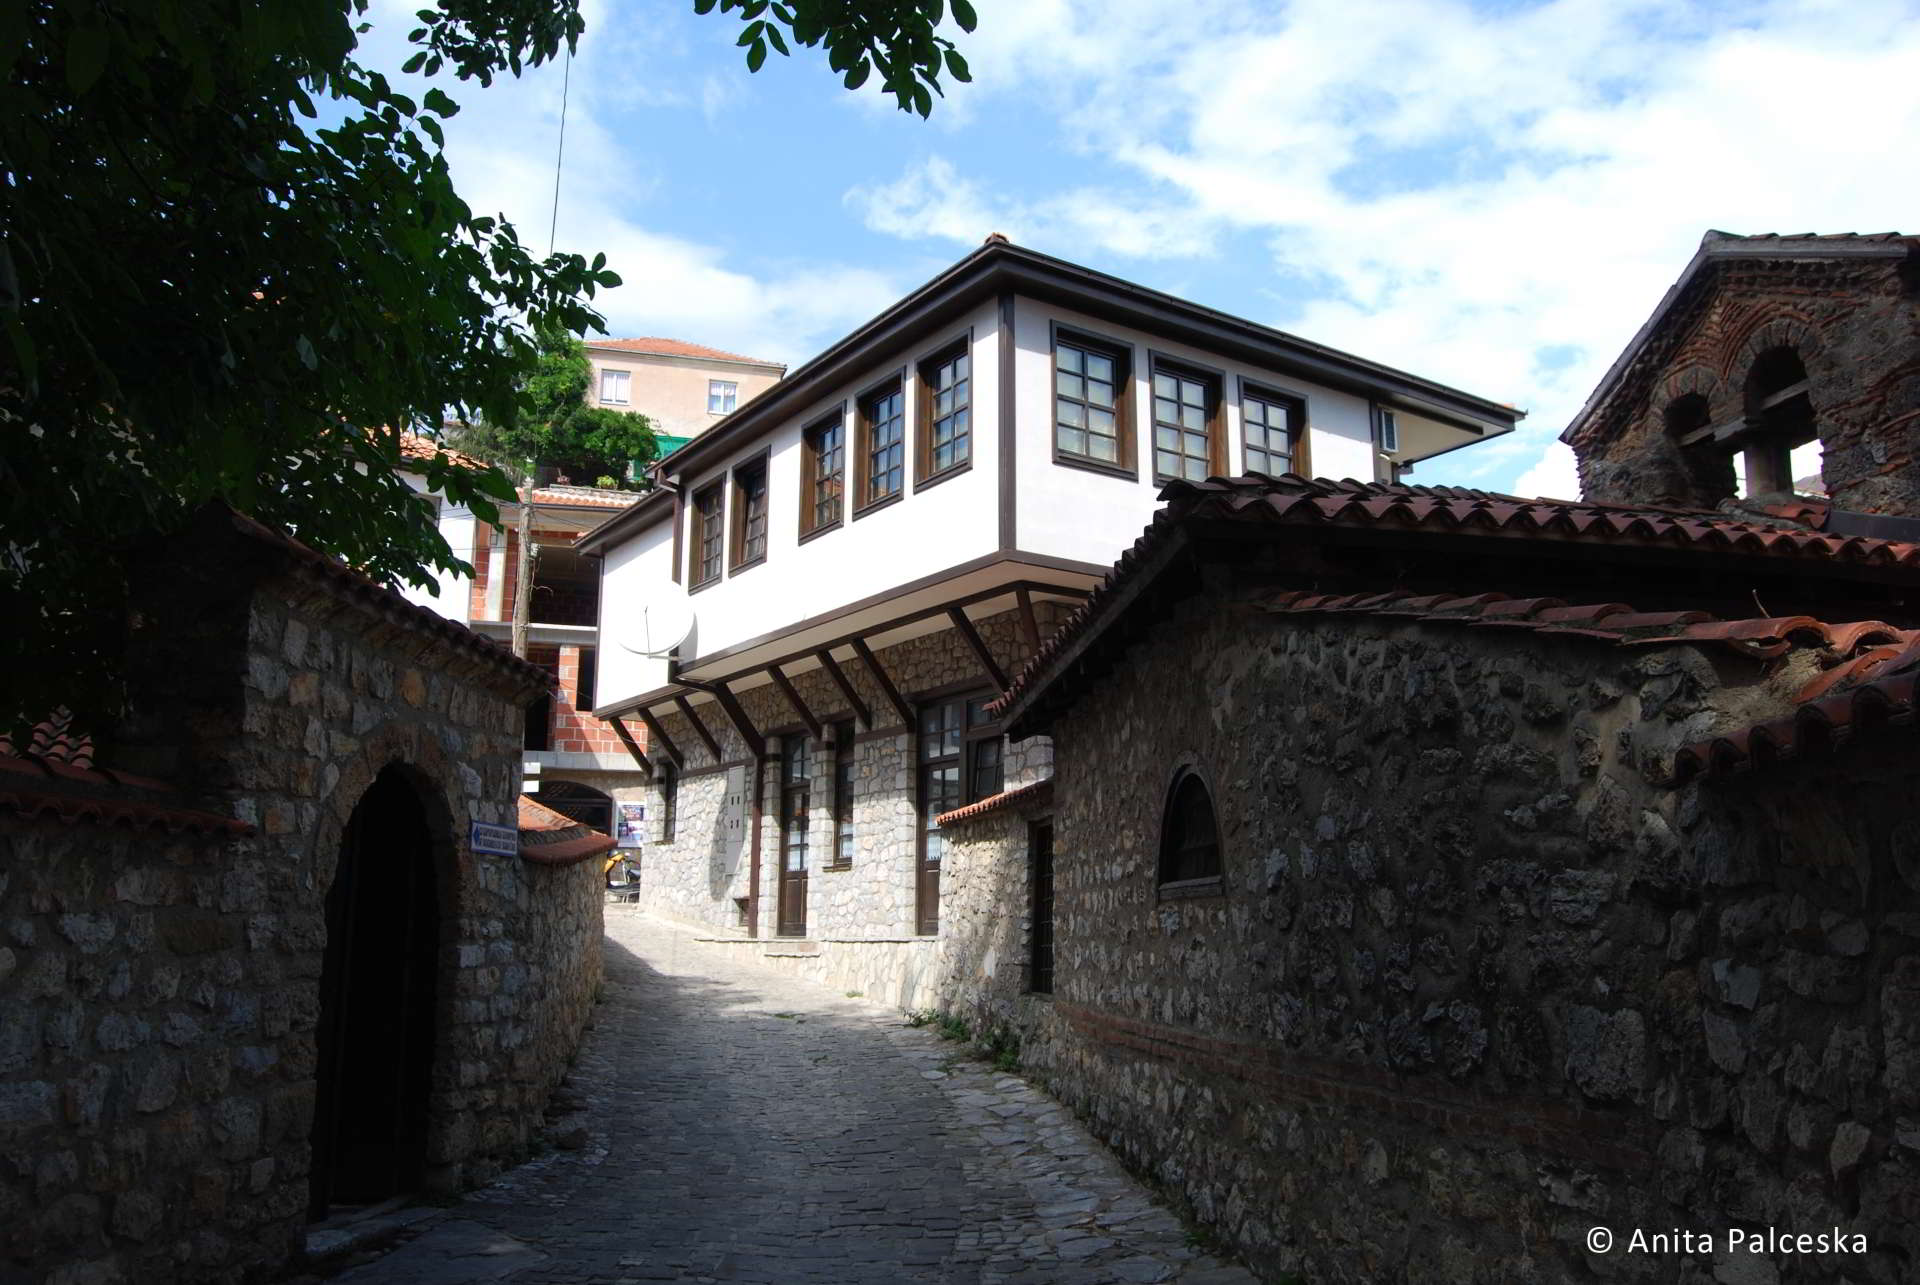 Ohrid architecture